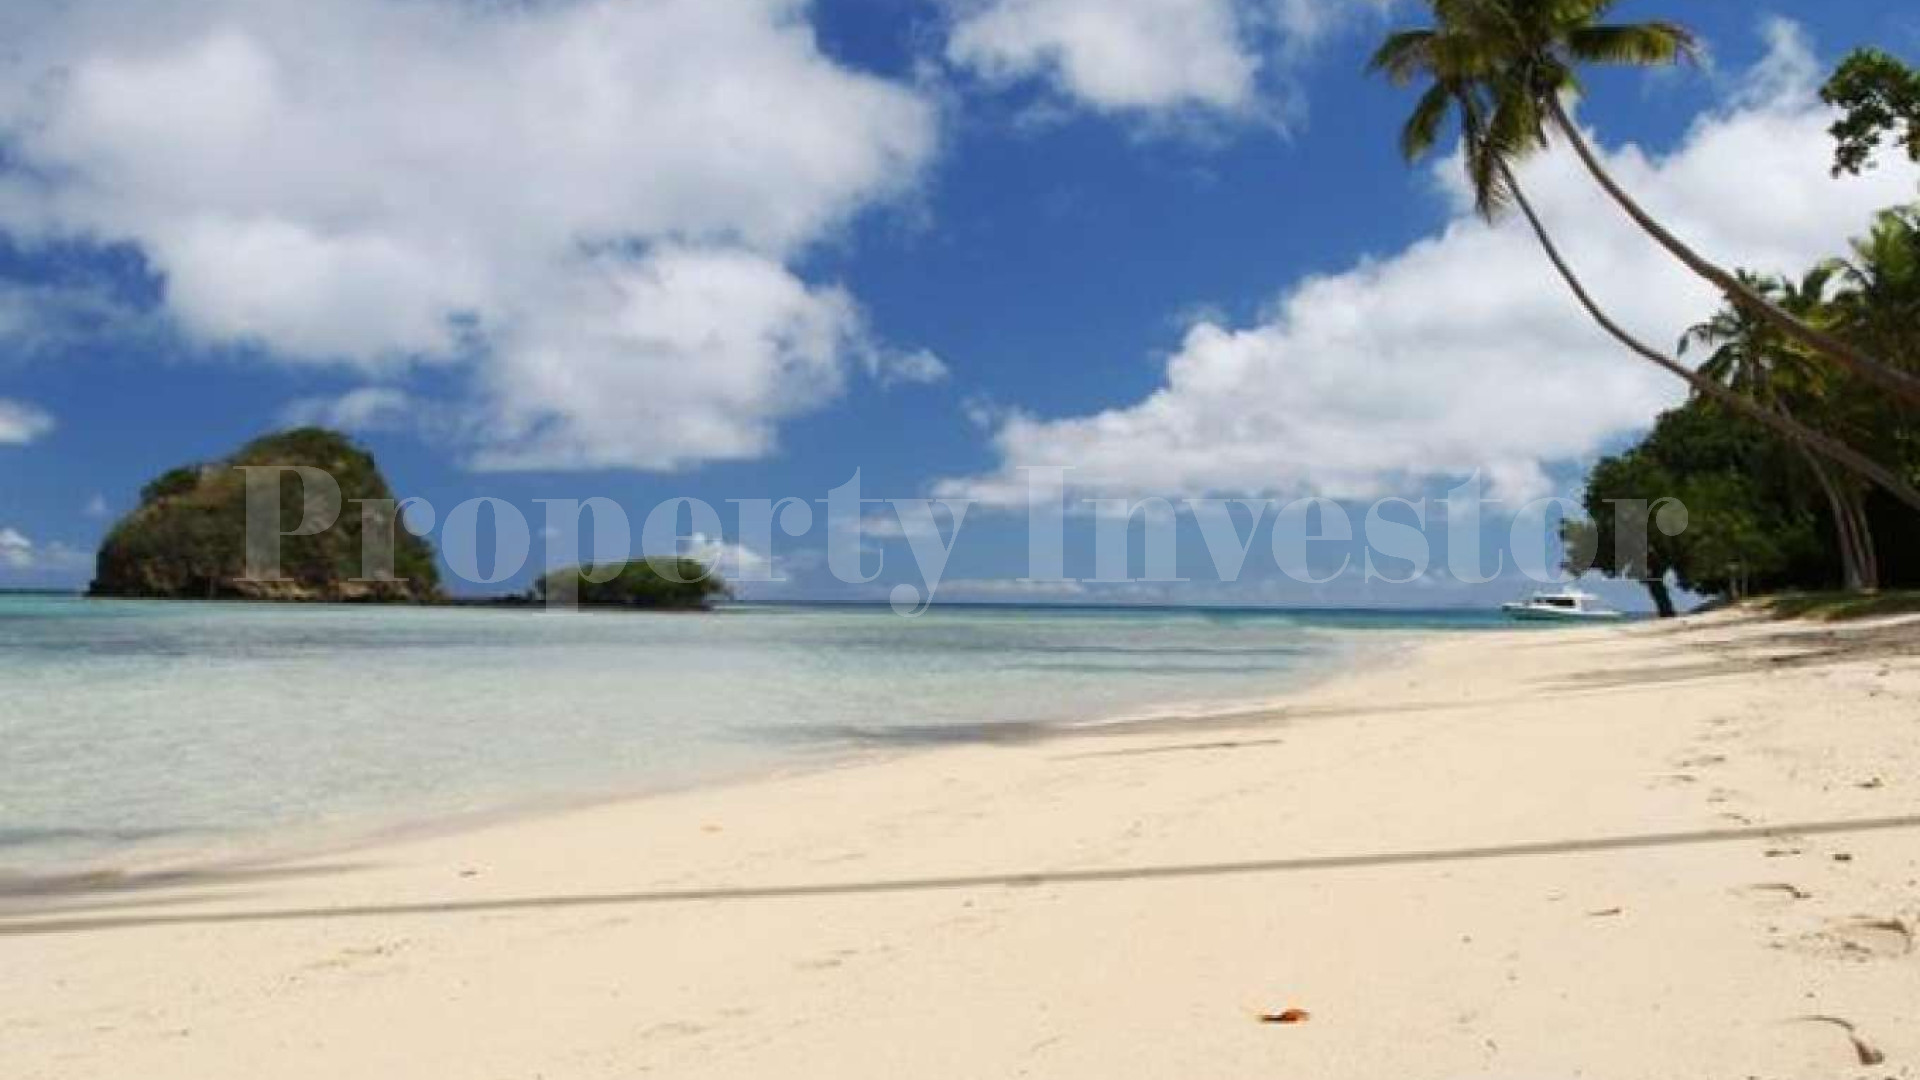 Pristine 41 Hectare Private Tropical Island for Sale in Fiji